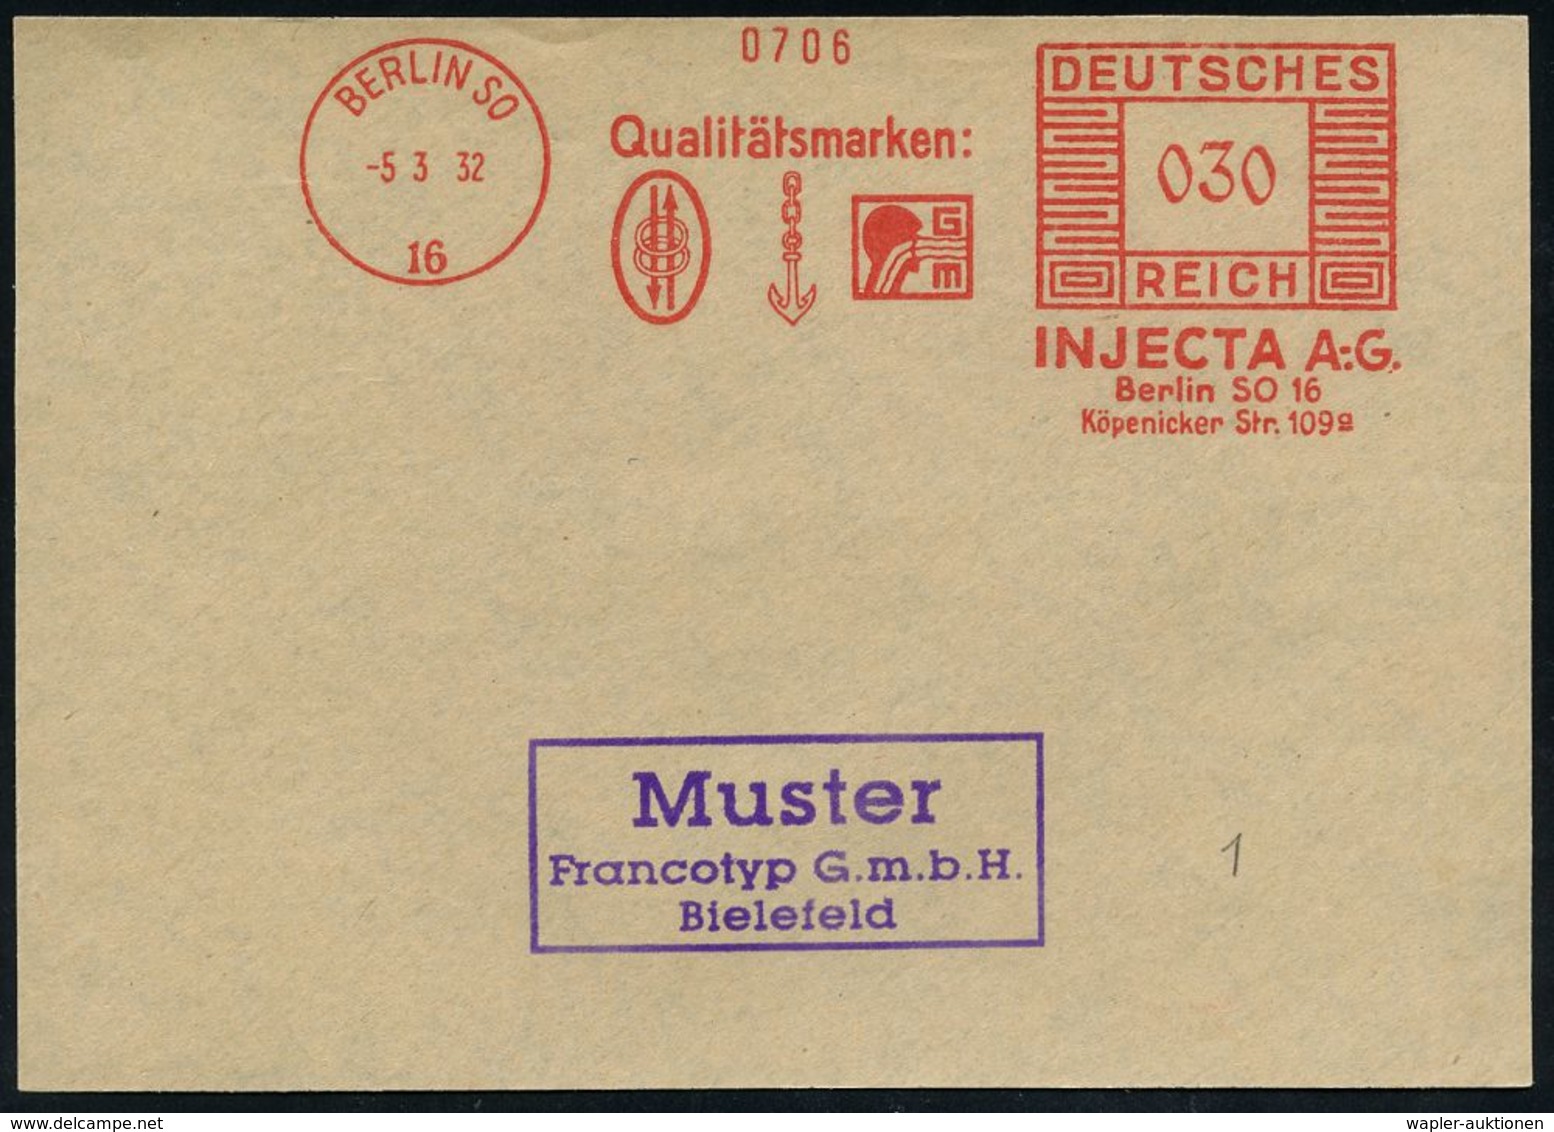 MEDIZINISCHE AUSRÜSTUNG & INSTRUMENTE : BERLIN SO/ 16/ INJECTA AG. 1932 (5.3.) AFS Reichspost-Archivmuster "Mäander-Rech - Médecine